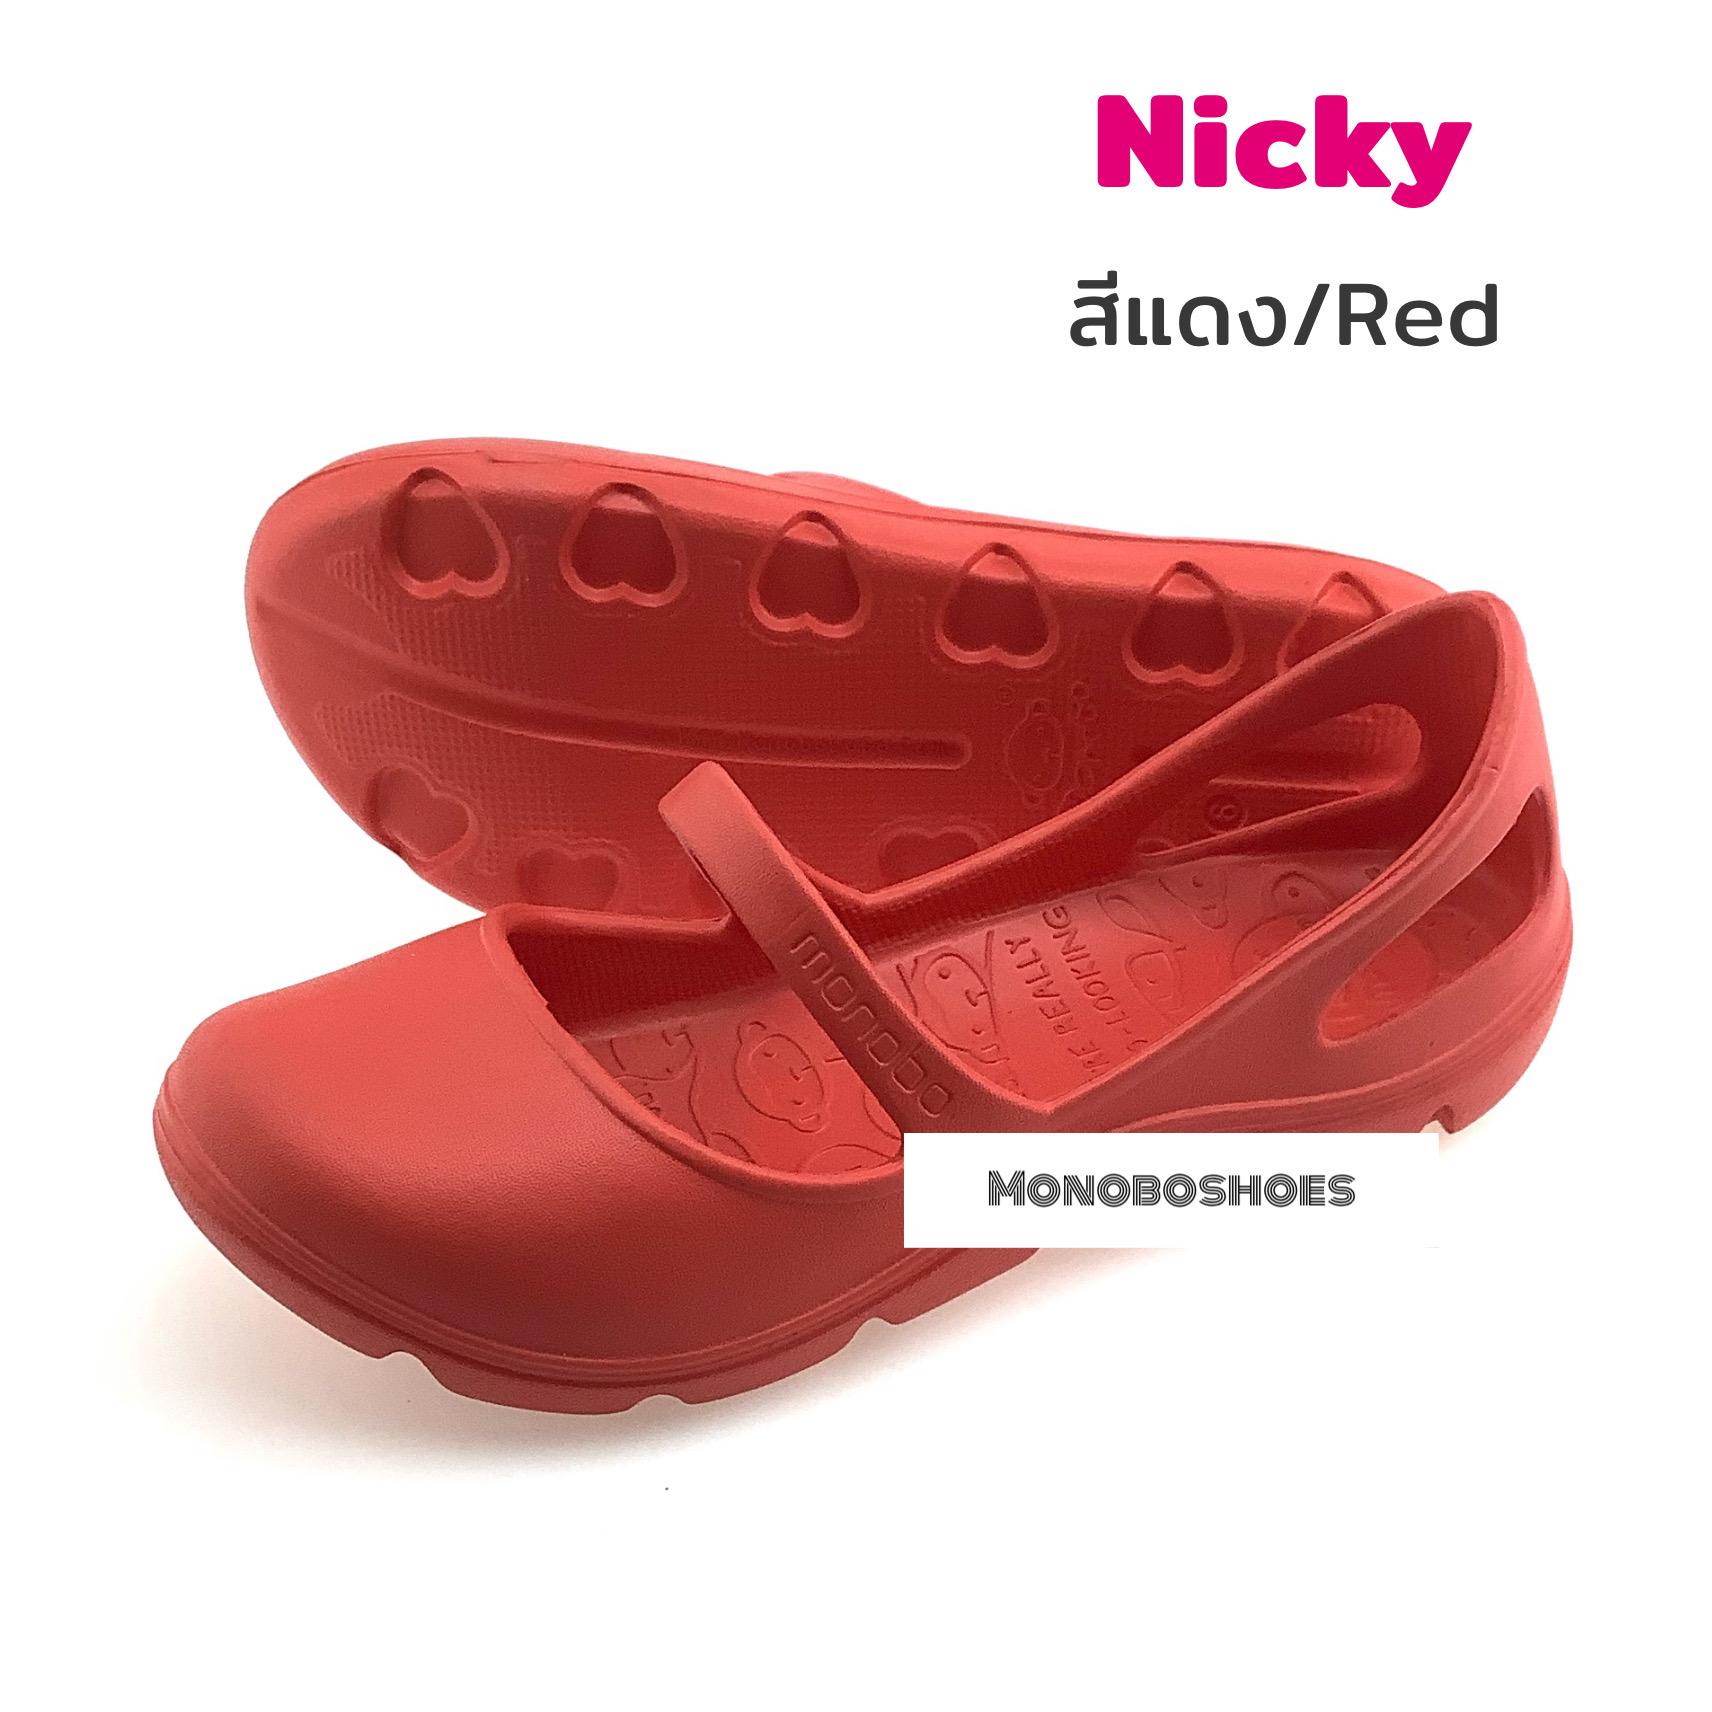 รองเท้า Monobo รุ่น Nicky ของแท้ 100%